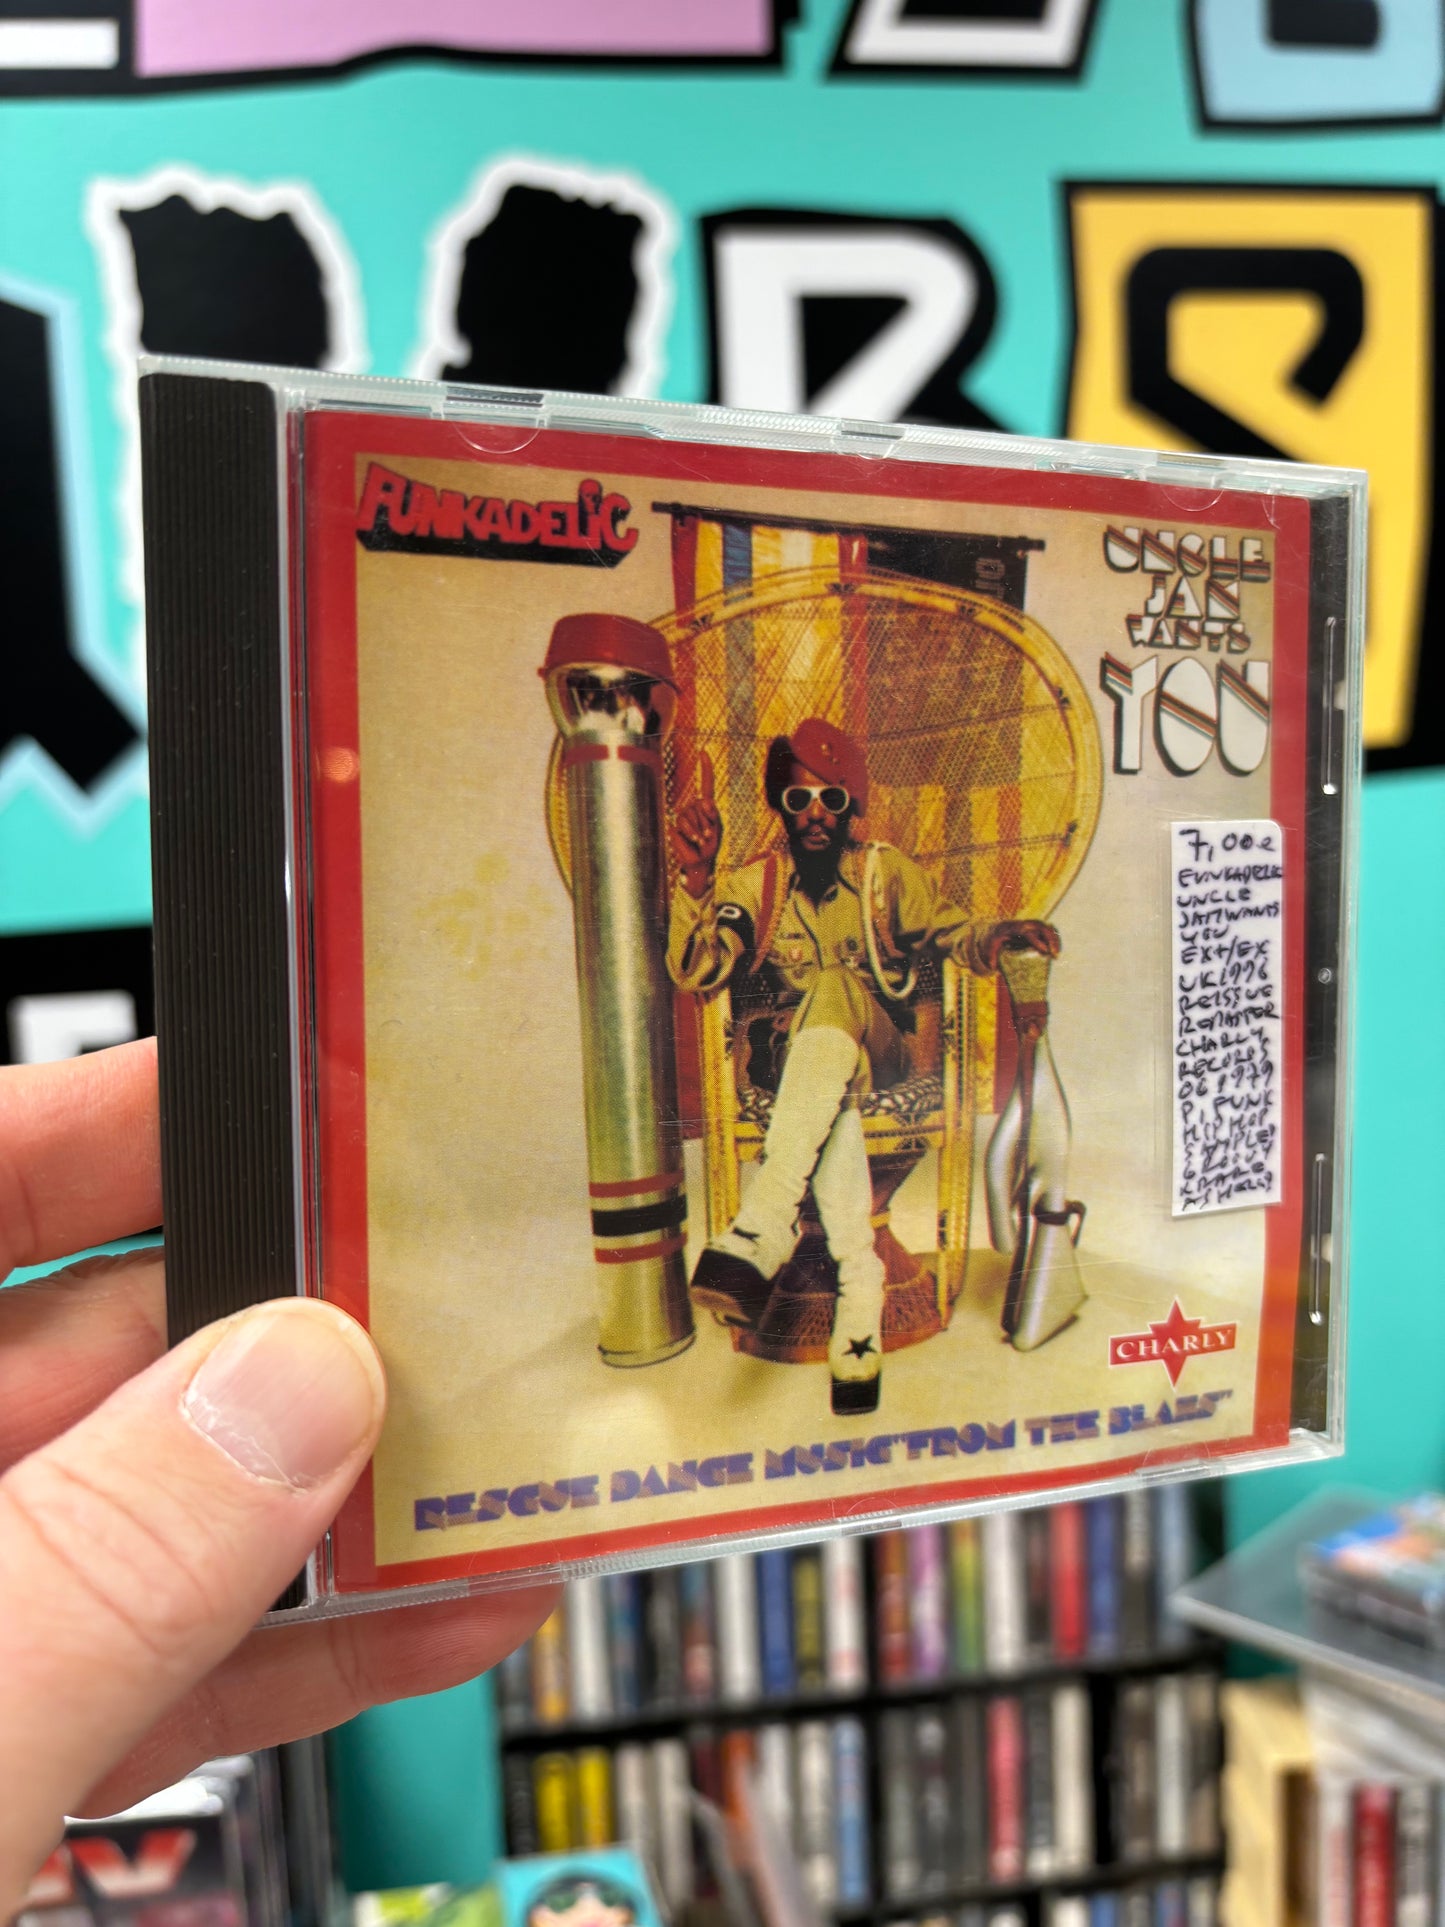 Funkadelic: Uncle Jam Wants You, CD, reissue, remastered, UK 1996